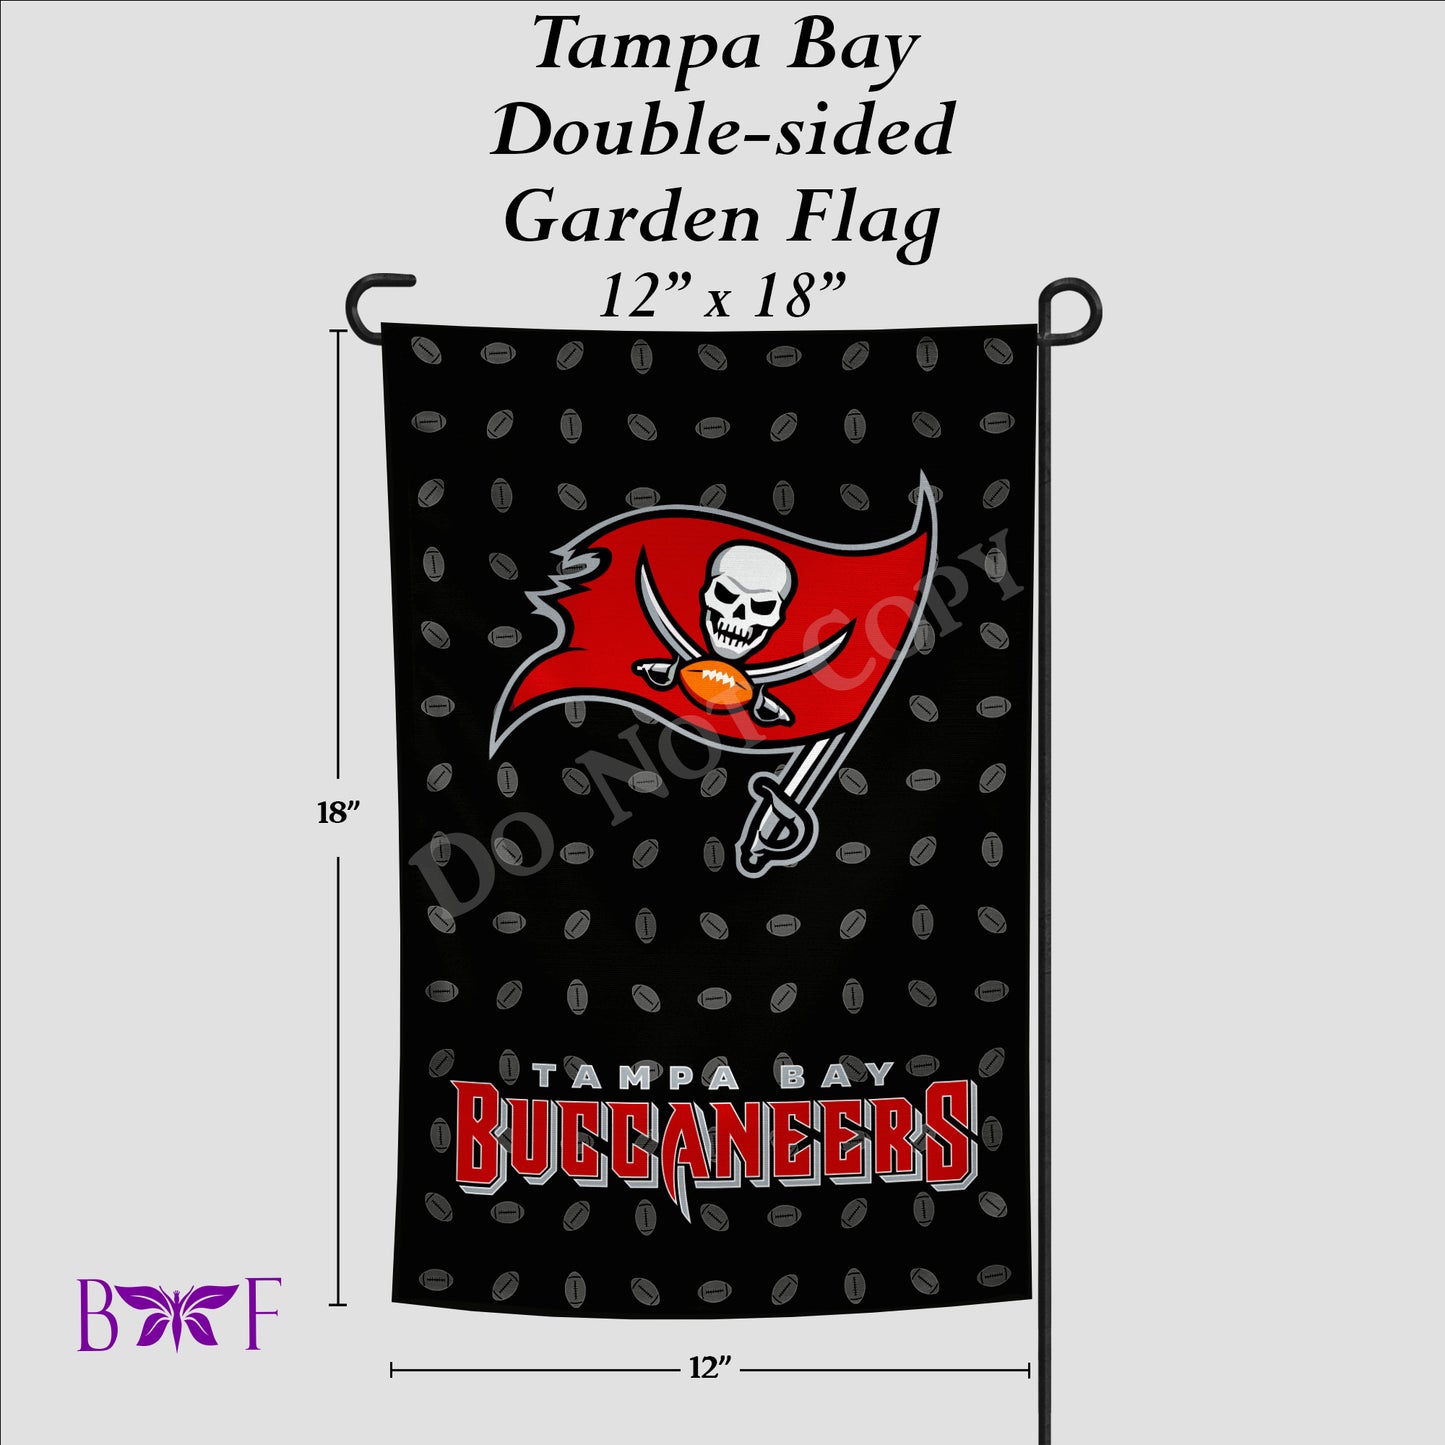 Tampa Bay Garden Flag